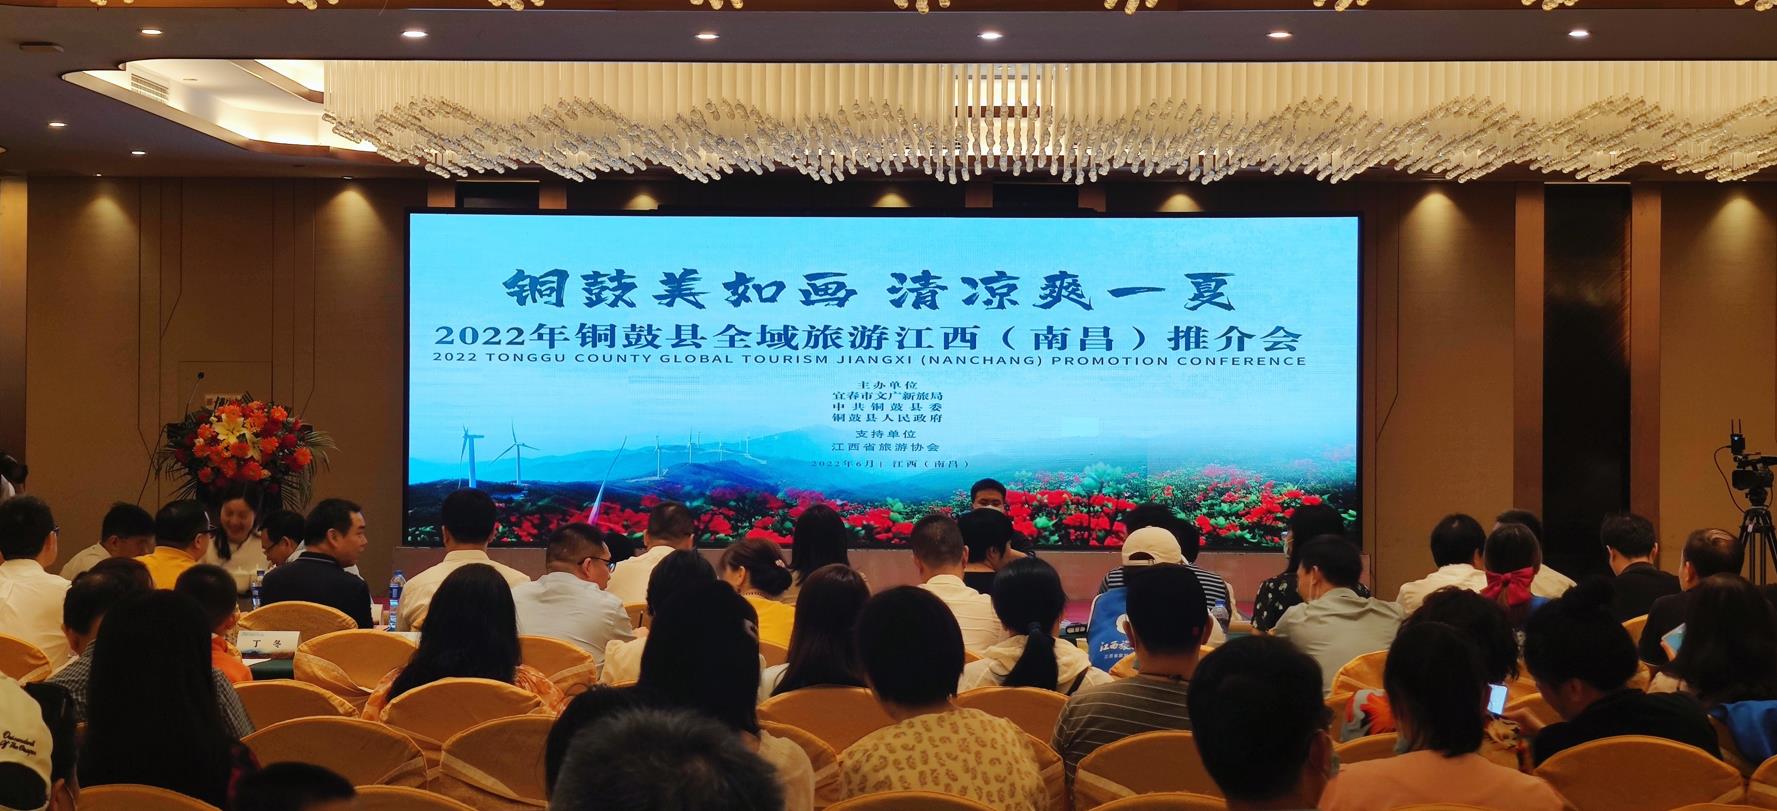 2022铜鼓县全域旅游江西推介会6月25日在南昌举行